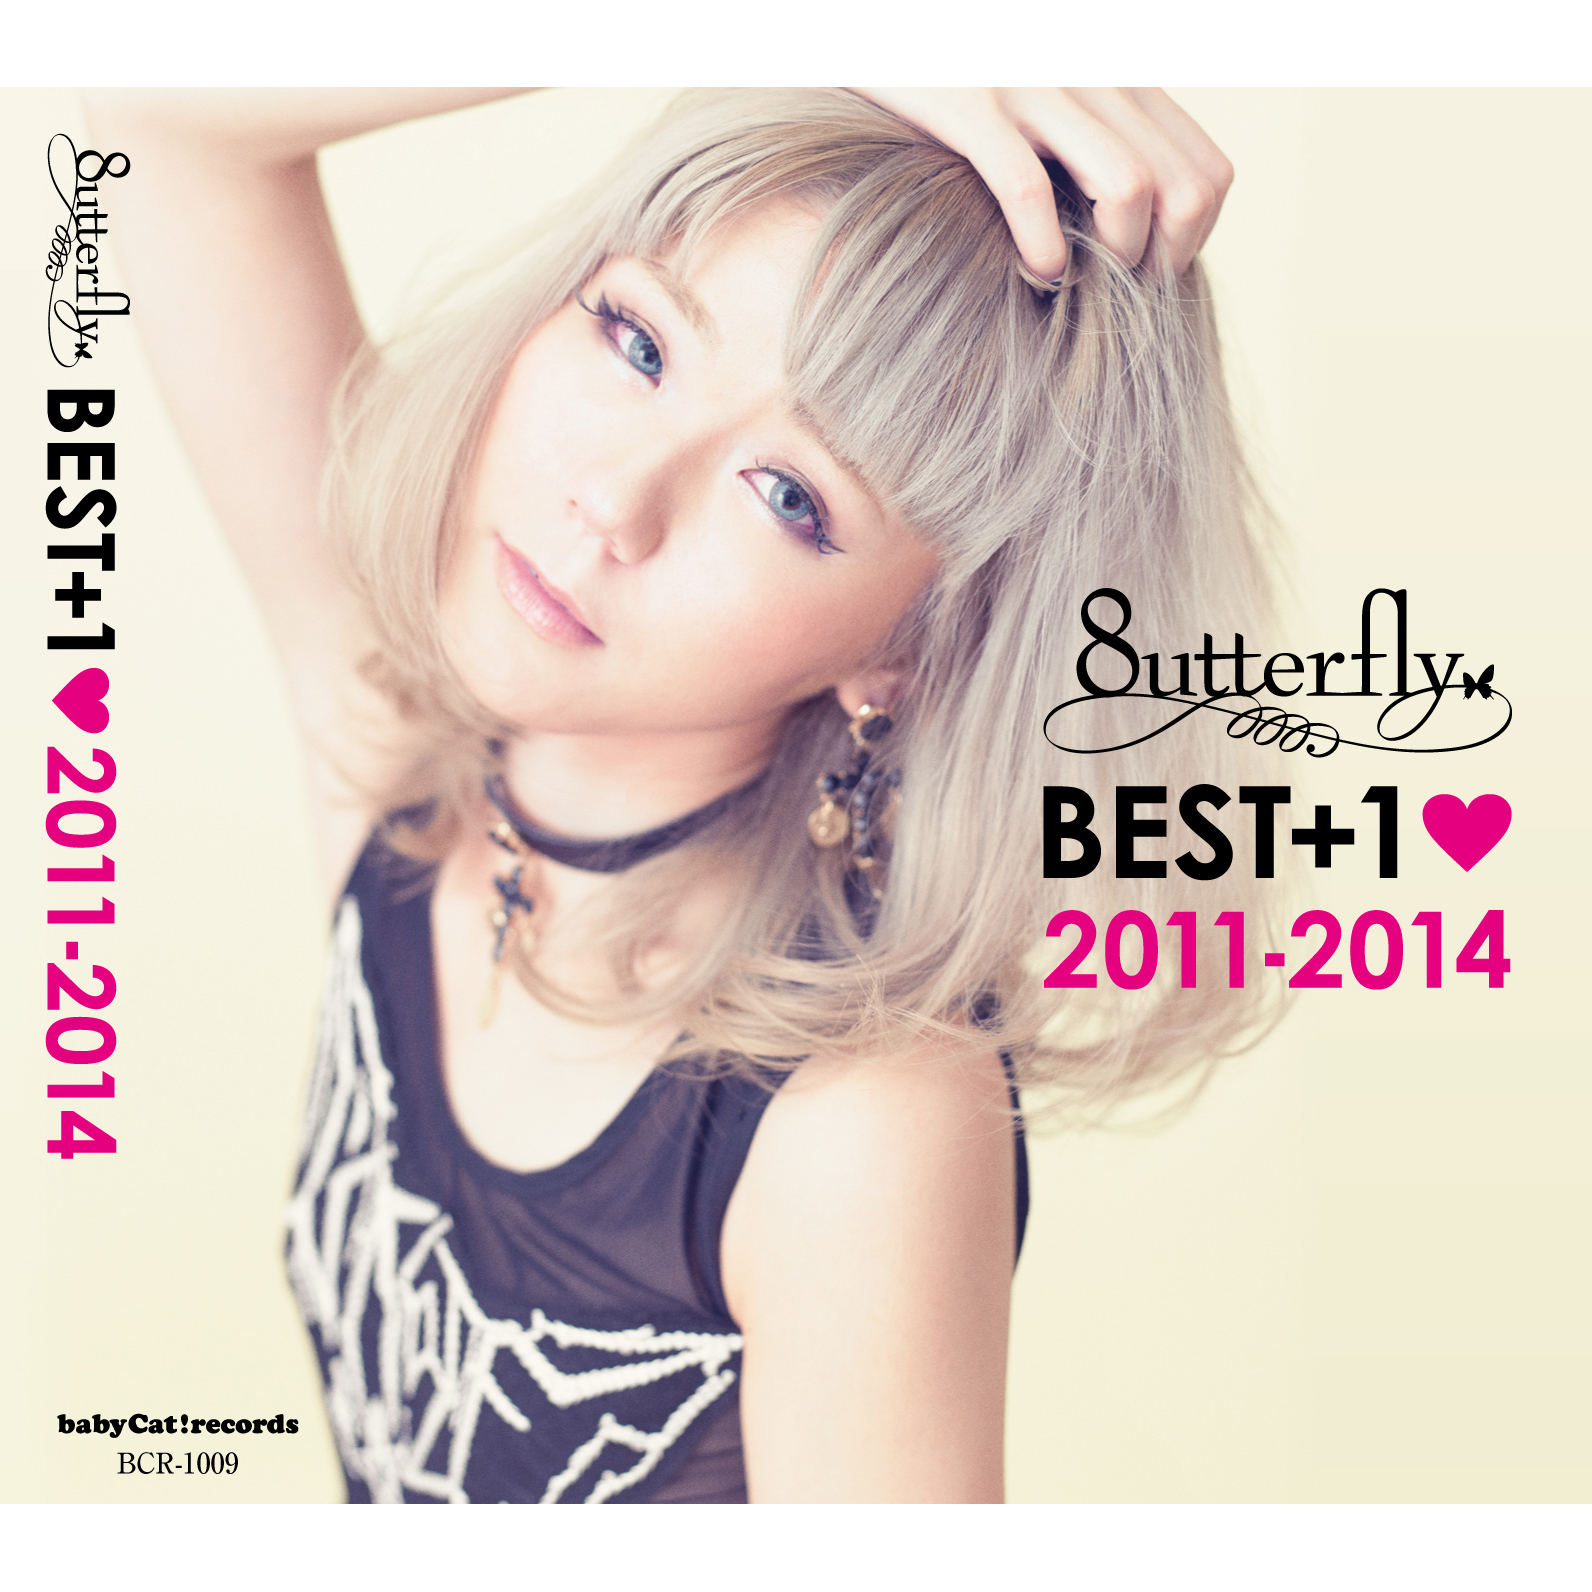 8utterfly「BEST+1 2011-2014」